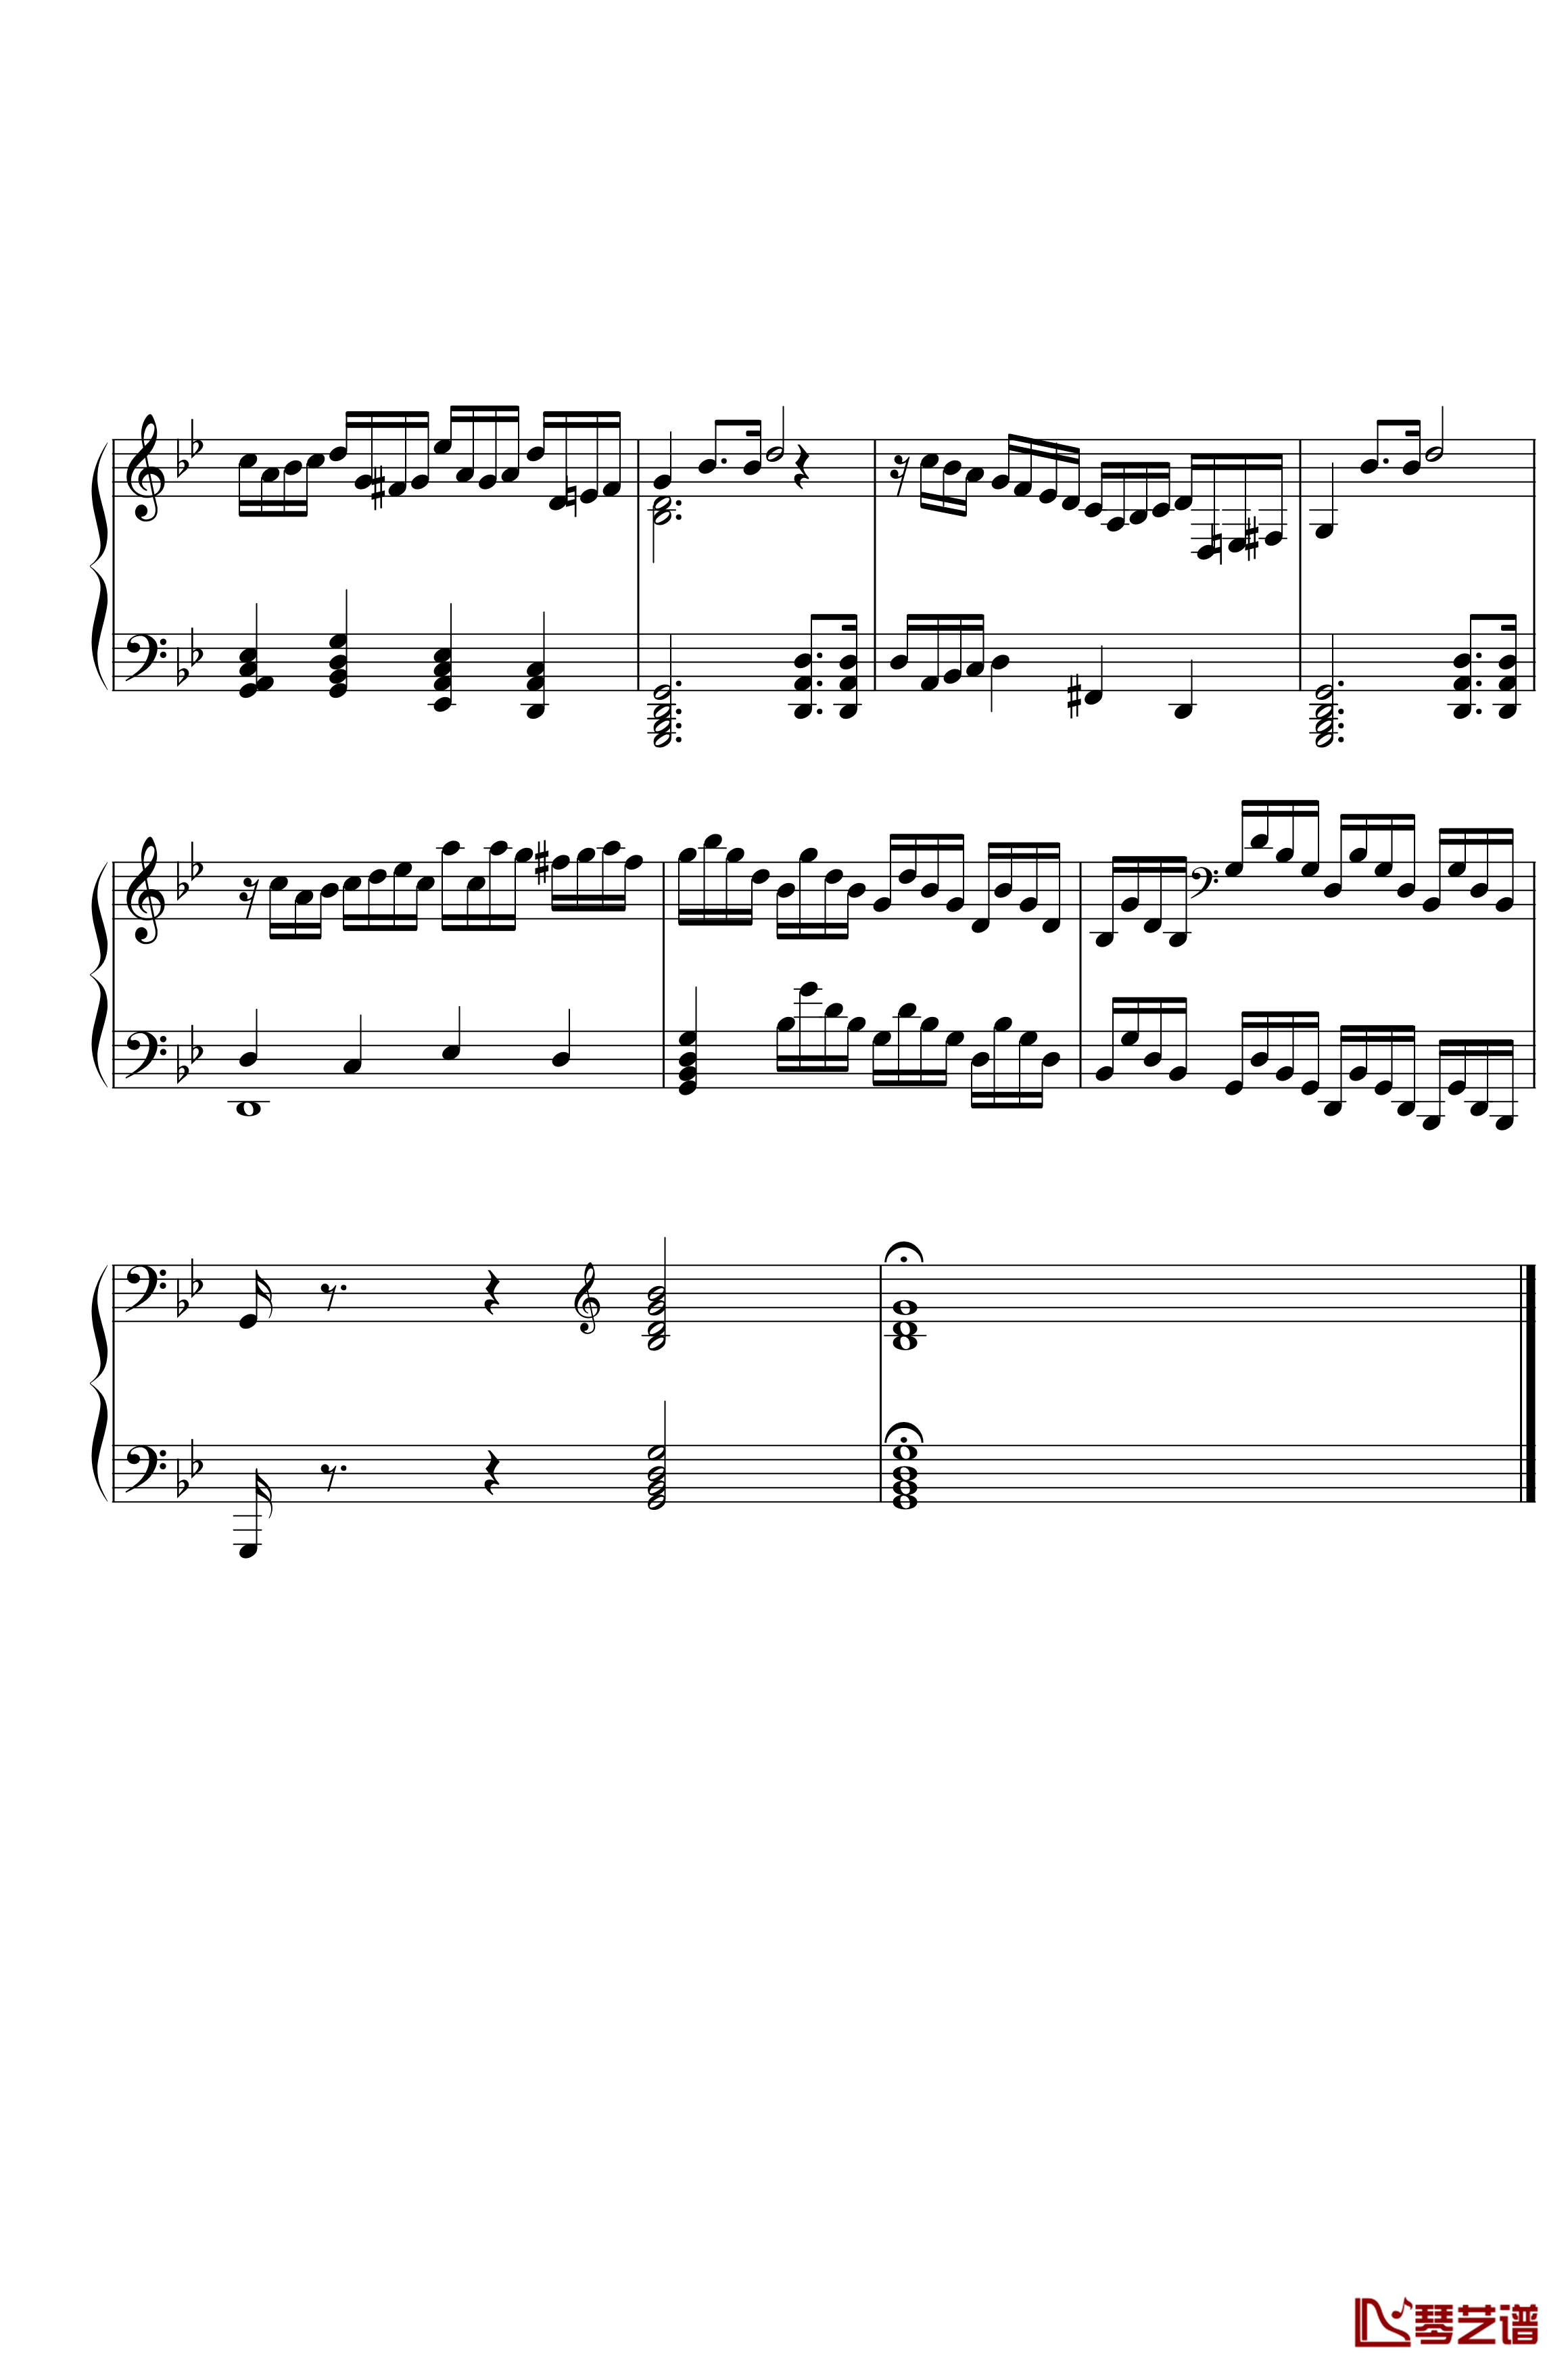 第三钢琴奏鸣曲第一乐章钢琴谱-nzh19347